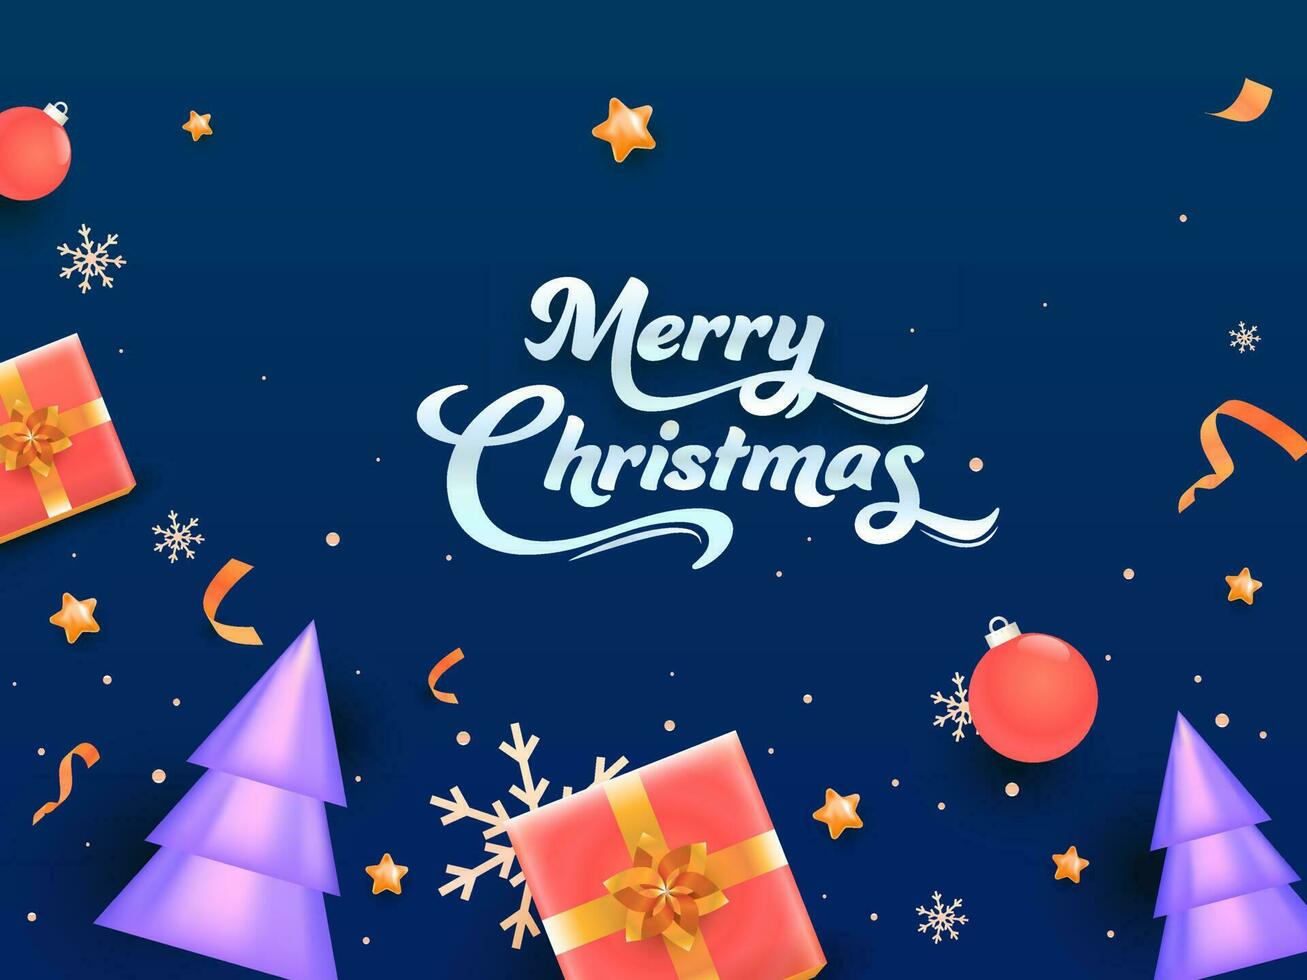 blå bakgrund dekorerad med 3d glansig xmas träd, gåva lådor, grannlåt, stjärnor och snöflingor för glad jul firande. vektor